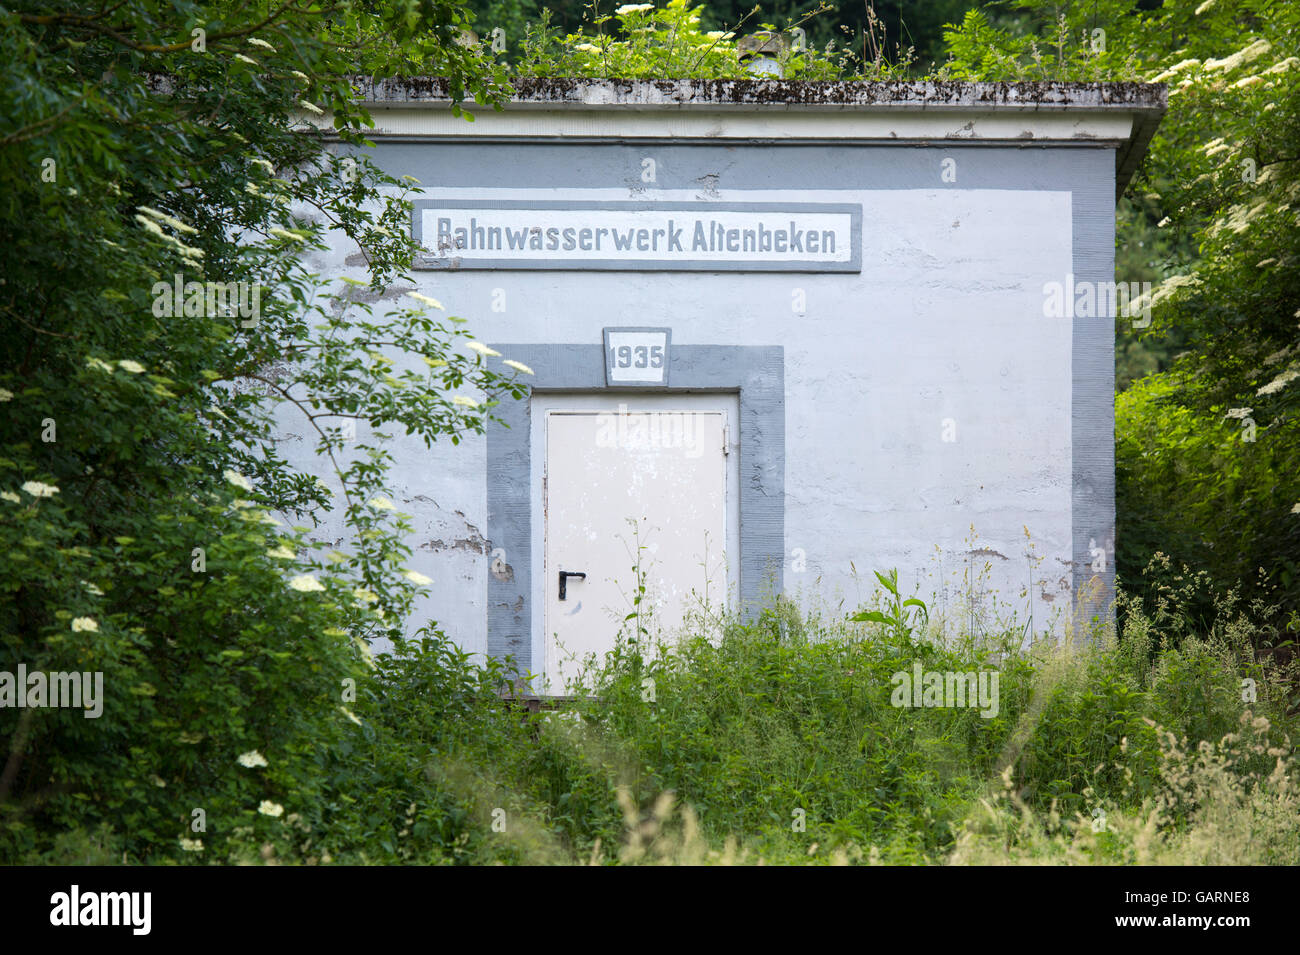 Deutschland, Renania settentrionale-Vestfalia, Altenbeken, Bahnwasserwerk, Wasserspeicher für die alten Dampflokomotiven Foto Stock